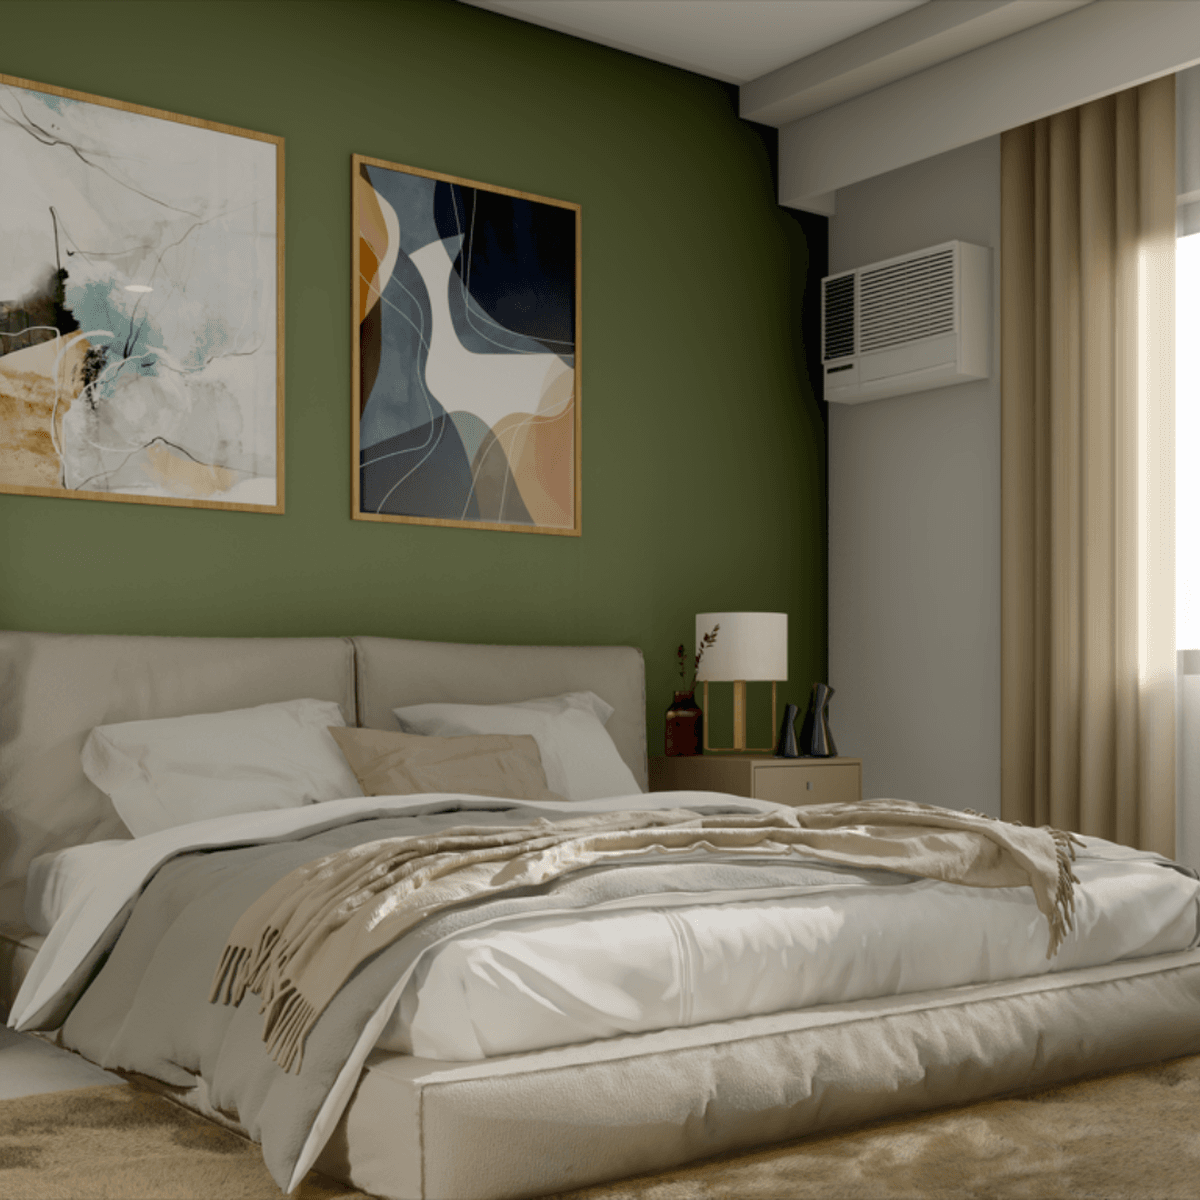 33.25 sqm 1-bedroom Condo For Sale in Manila Metro Manila